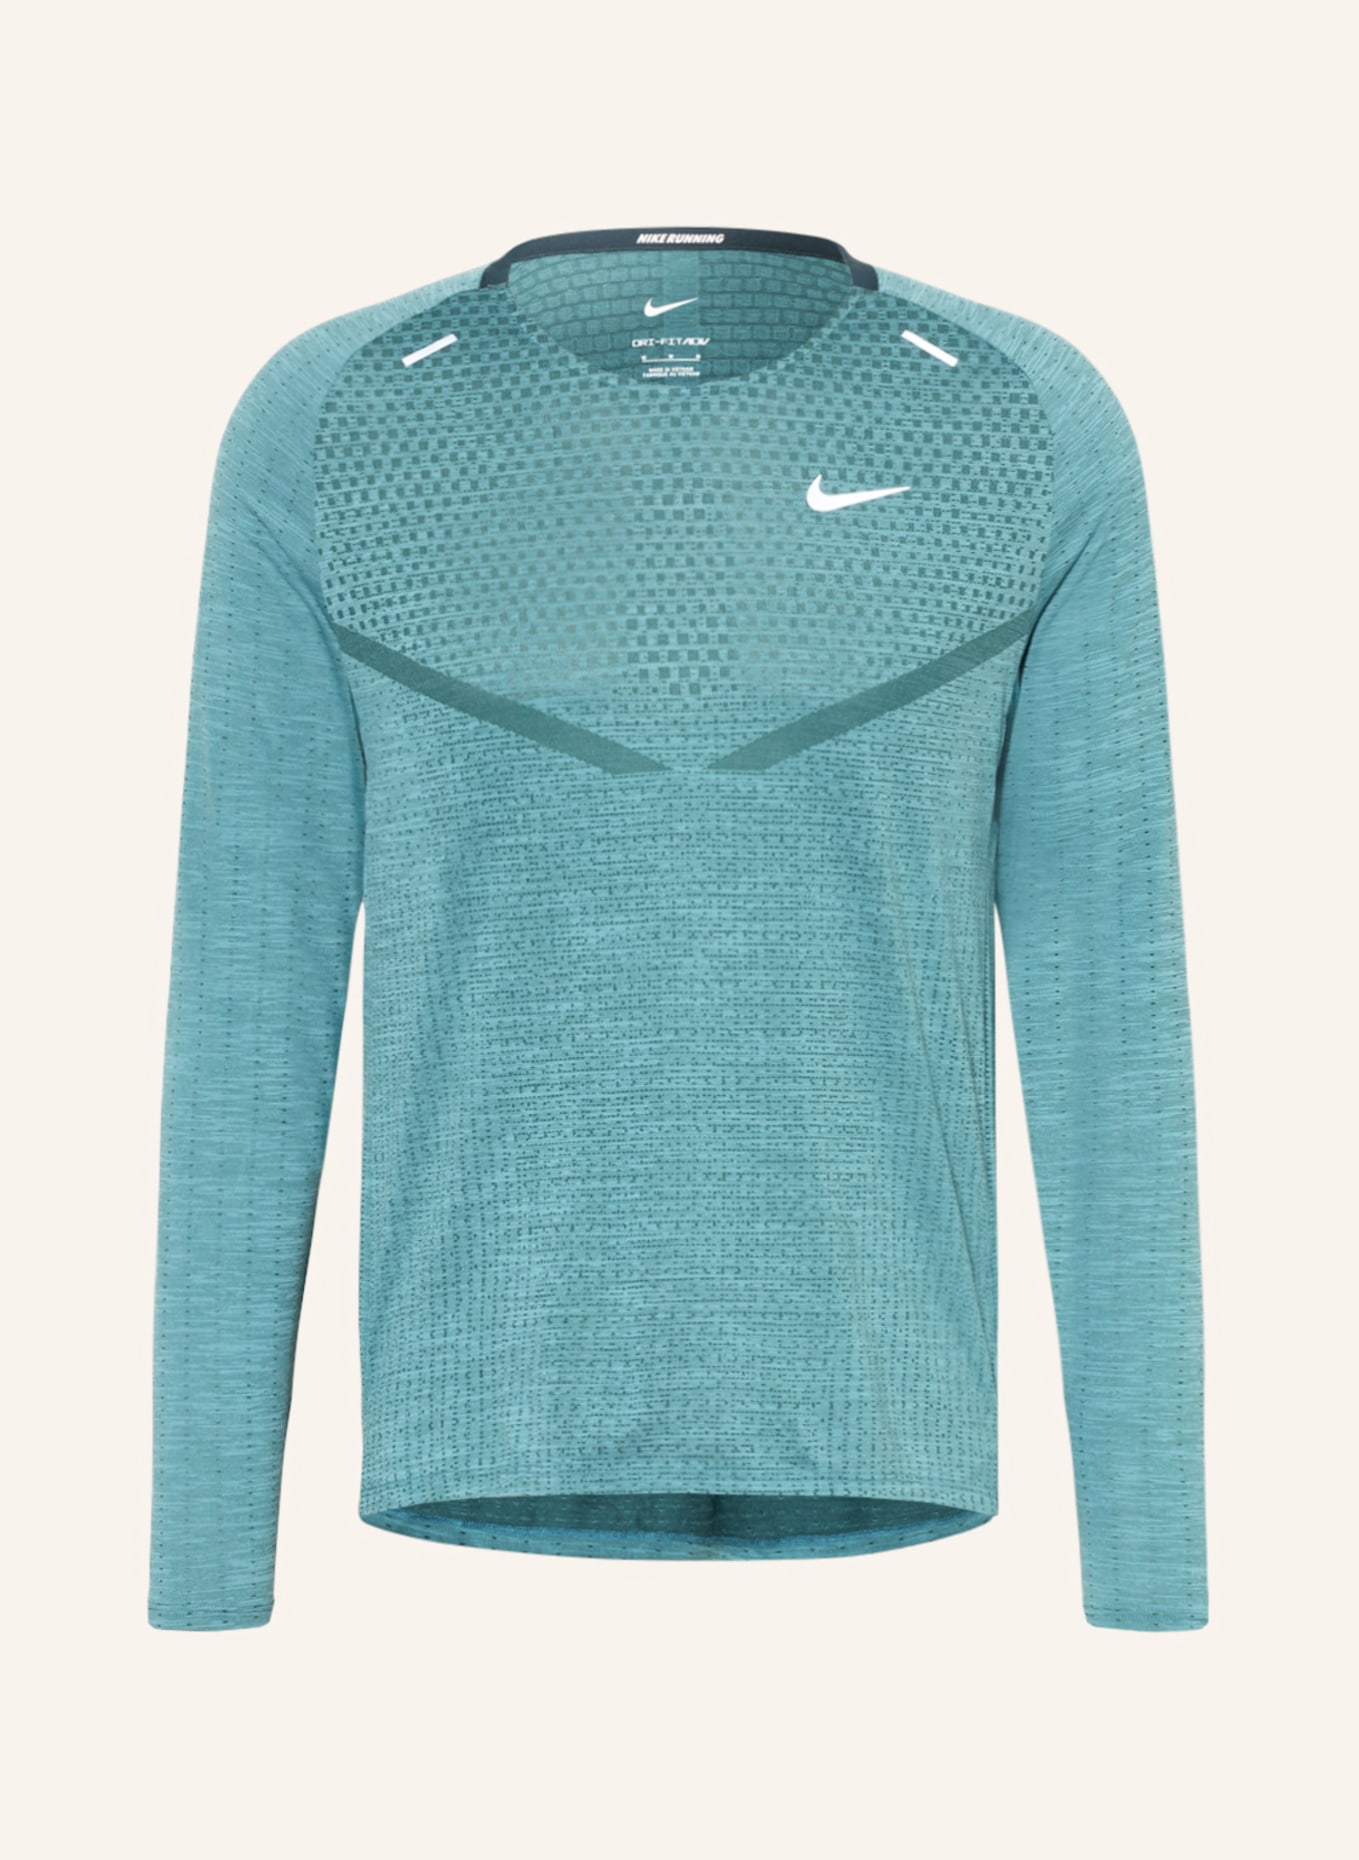 Nike Laufshirt DRI-FIT ADV TECHKNIT ULTRA, Farbe: PETROL/ SILBER (Bild 1)